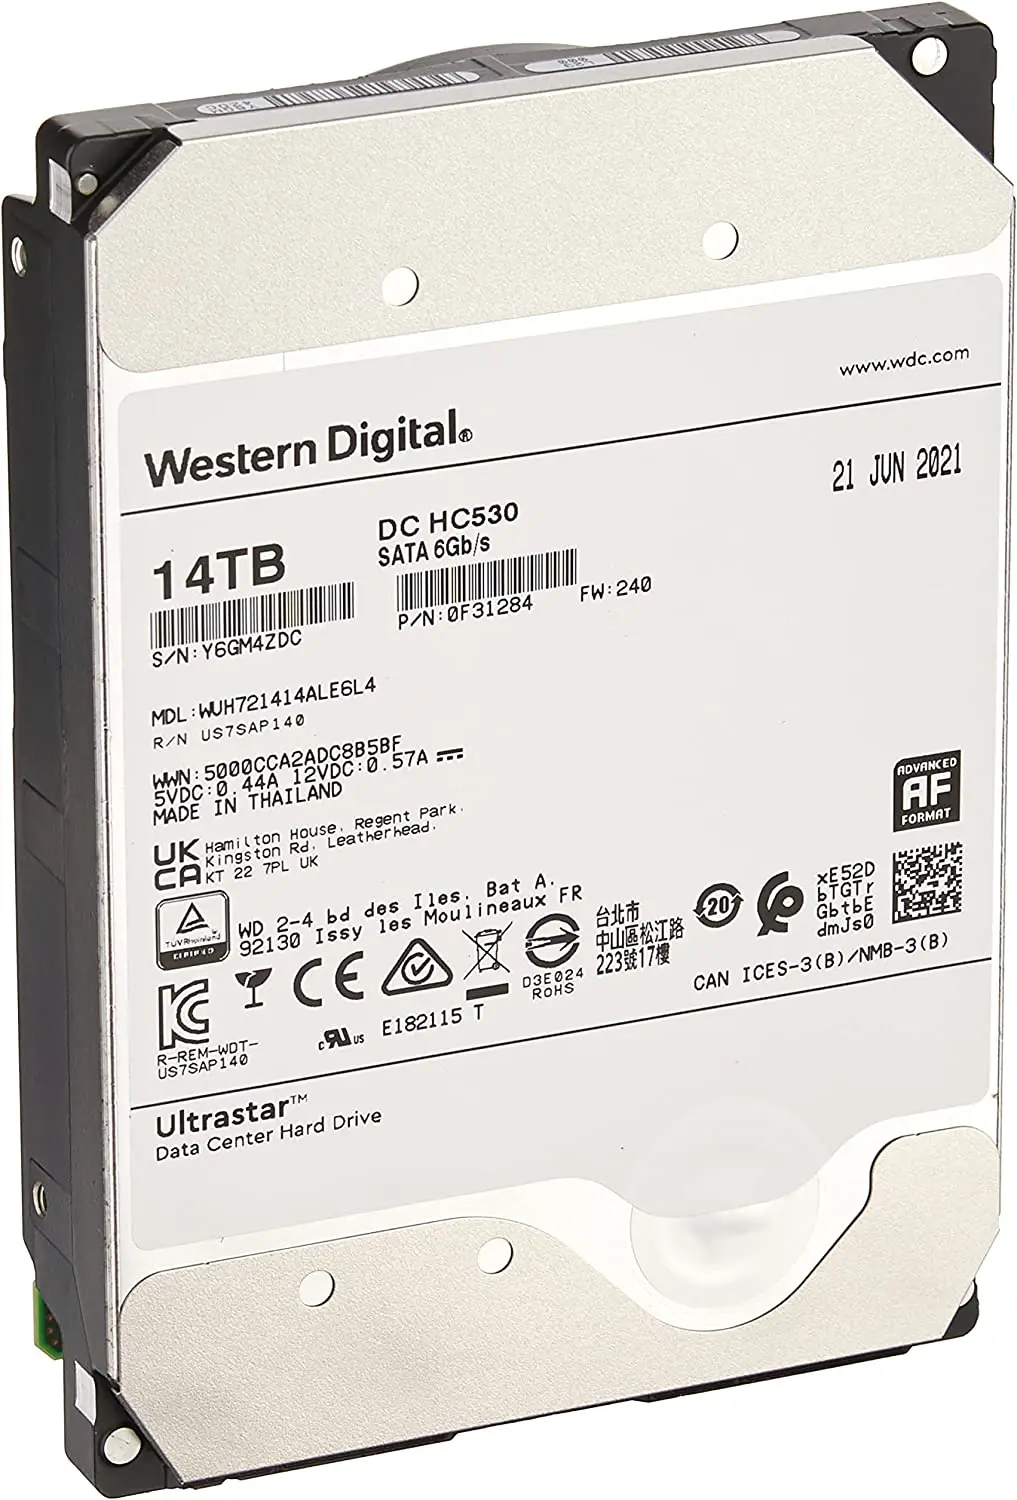 

Western Digital 14TB Ultrastar DC HC530 SATA HDD - 7200 RPM Class, SATA 6 Gb/s, 512MB Cache, 3.5" - WUH721414ALE6L4